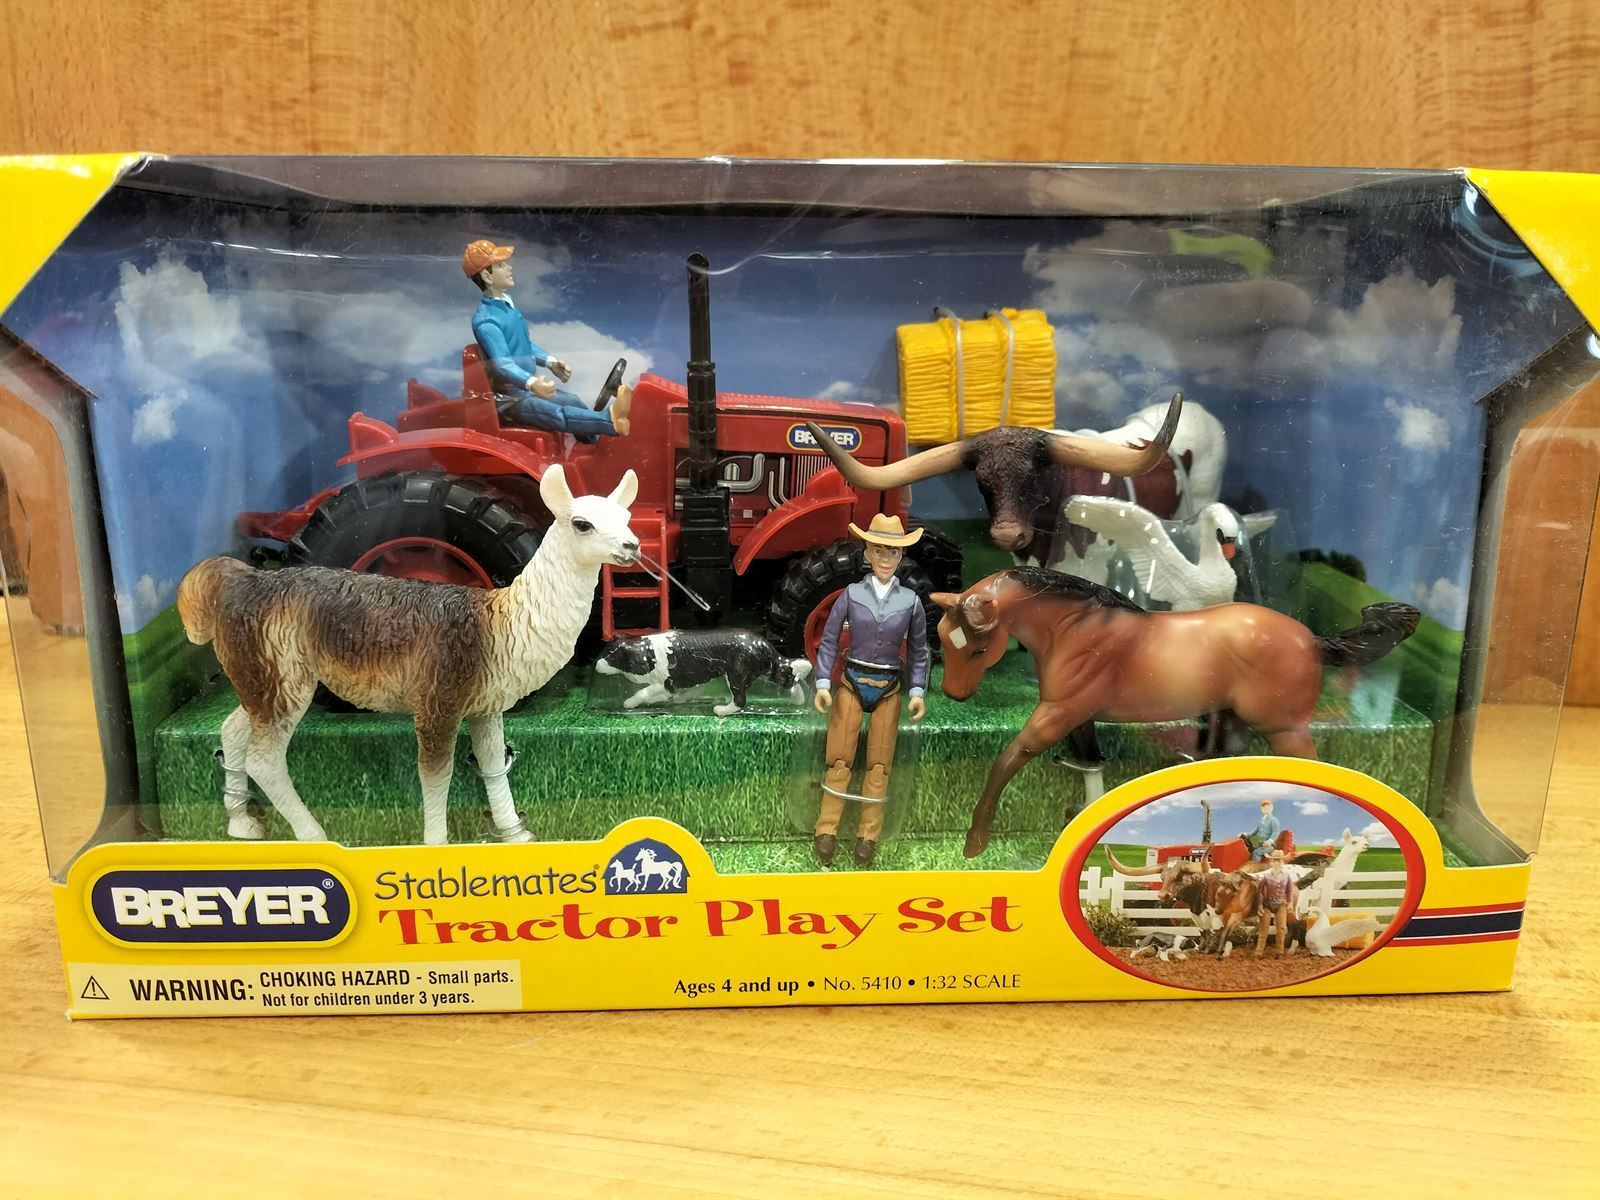 Juguete BREYER tractor play set, animales y tractor - Imagen 1